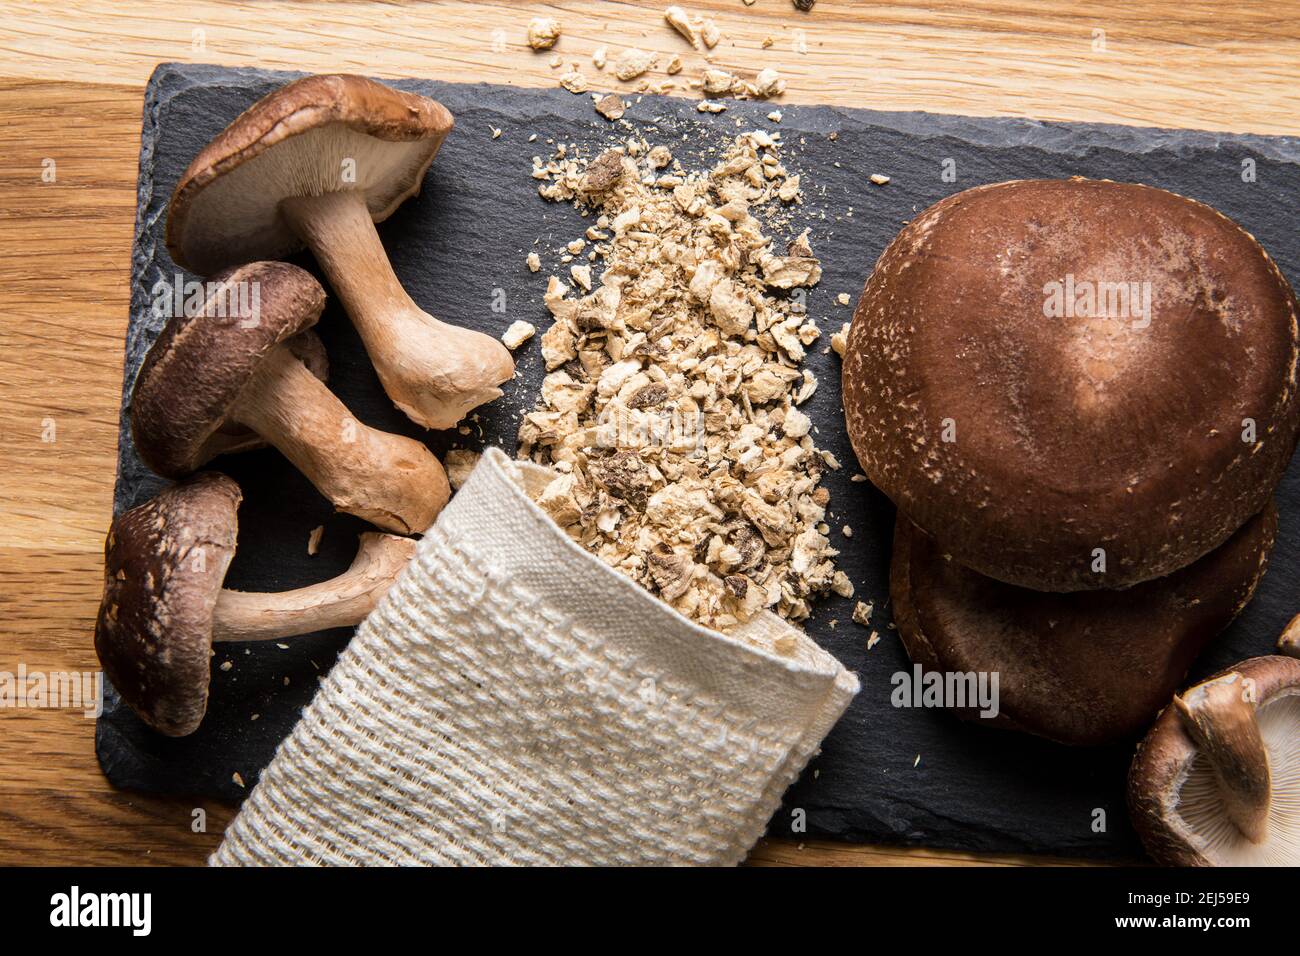 Plan de pose vue de la poudre sèche faite de champignons shiitake, Lentinula edodes. Ingrédient alimentaire sur planche à découper en pierre noire avec champignons shiitake frais Banque D'Images